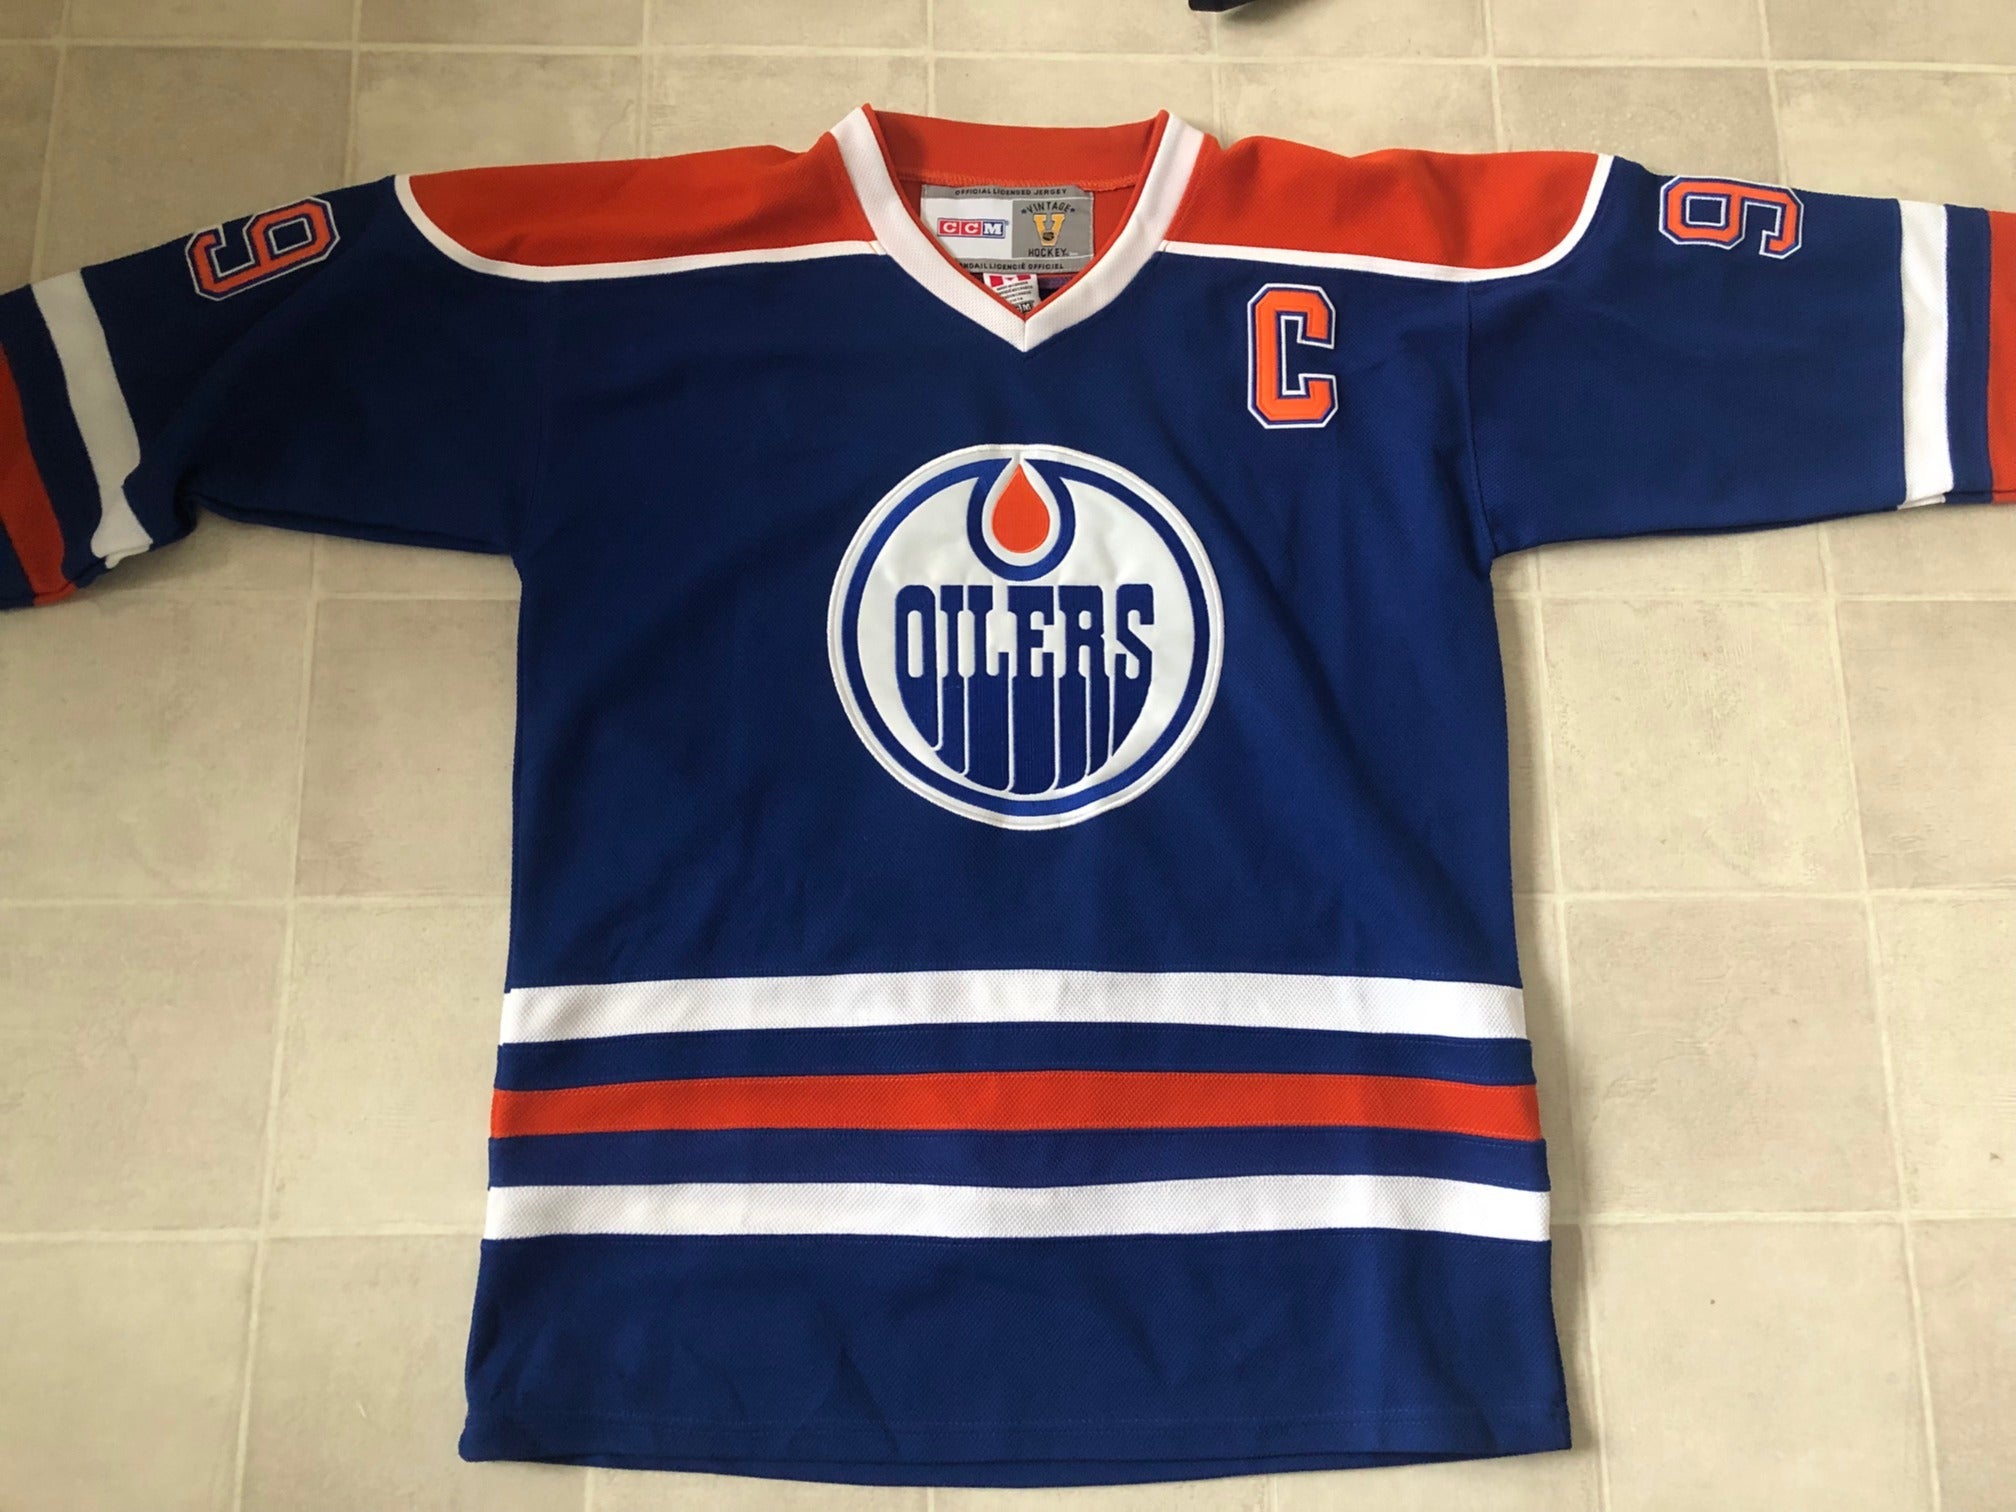 1996 Wayne Gretzky Western Conference NHL All Star CCM Jersey Size